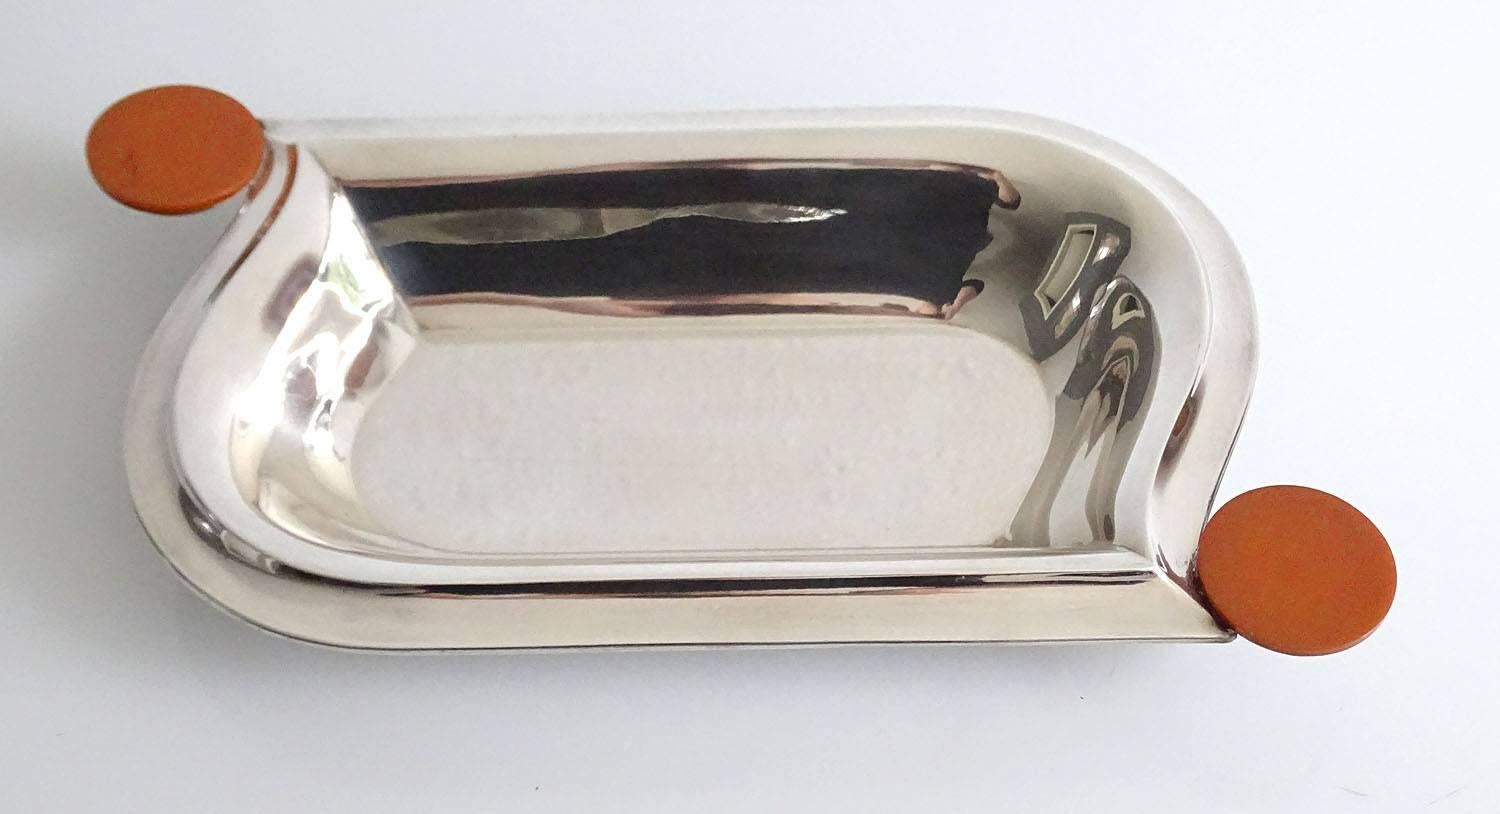 German Art Deco Tray Vide Poche, Silver Plate & Catalin, 1930s Modernist Design